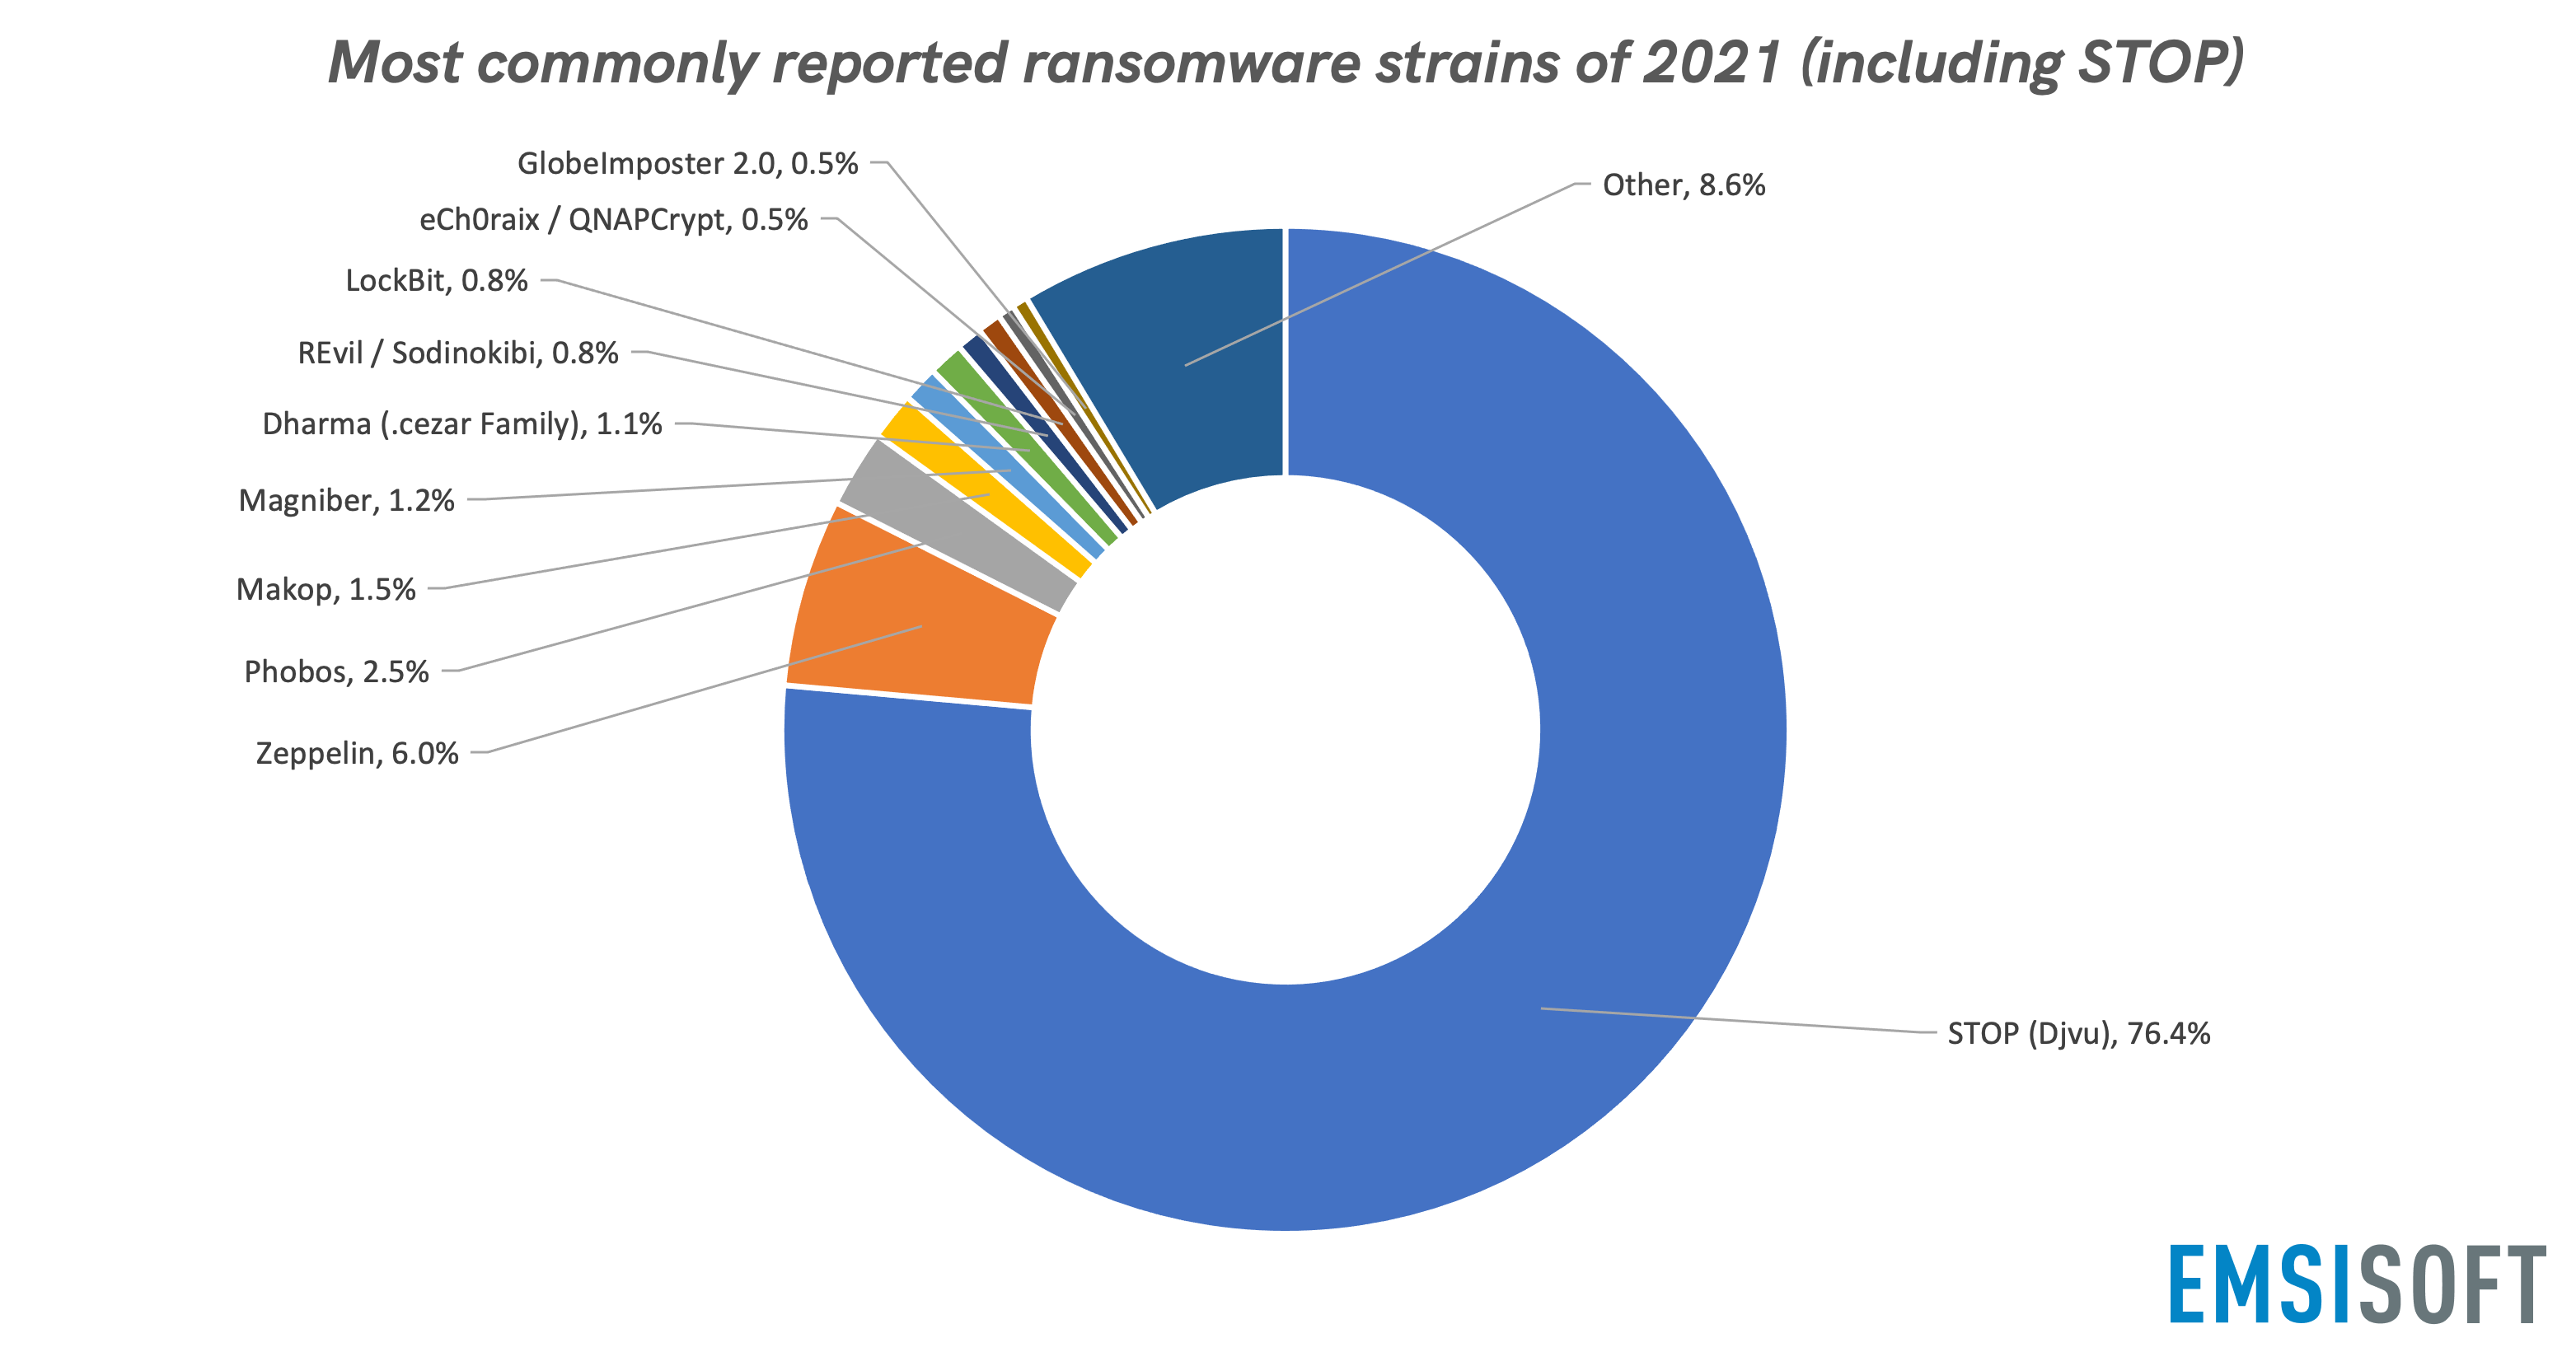 Die 2021 am häufigsten gemeldeten Ransomware-Familien (inkl. STOP)